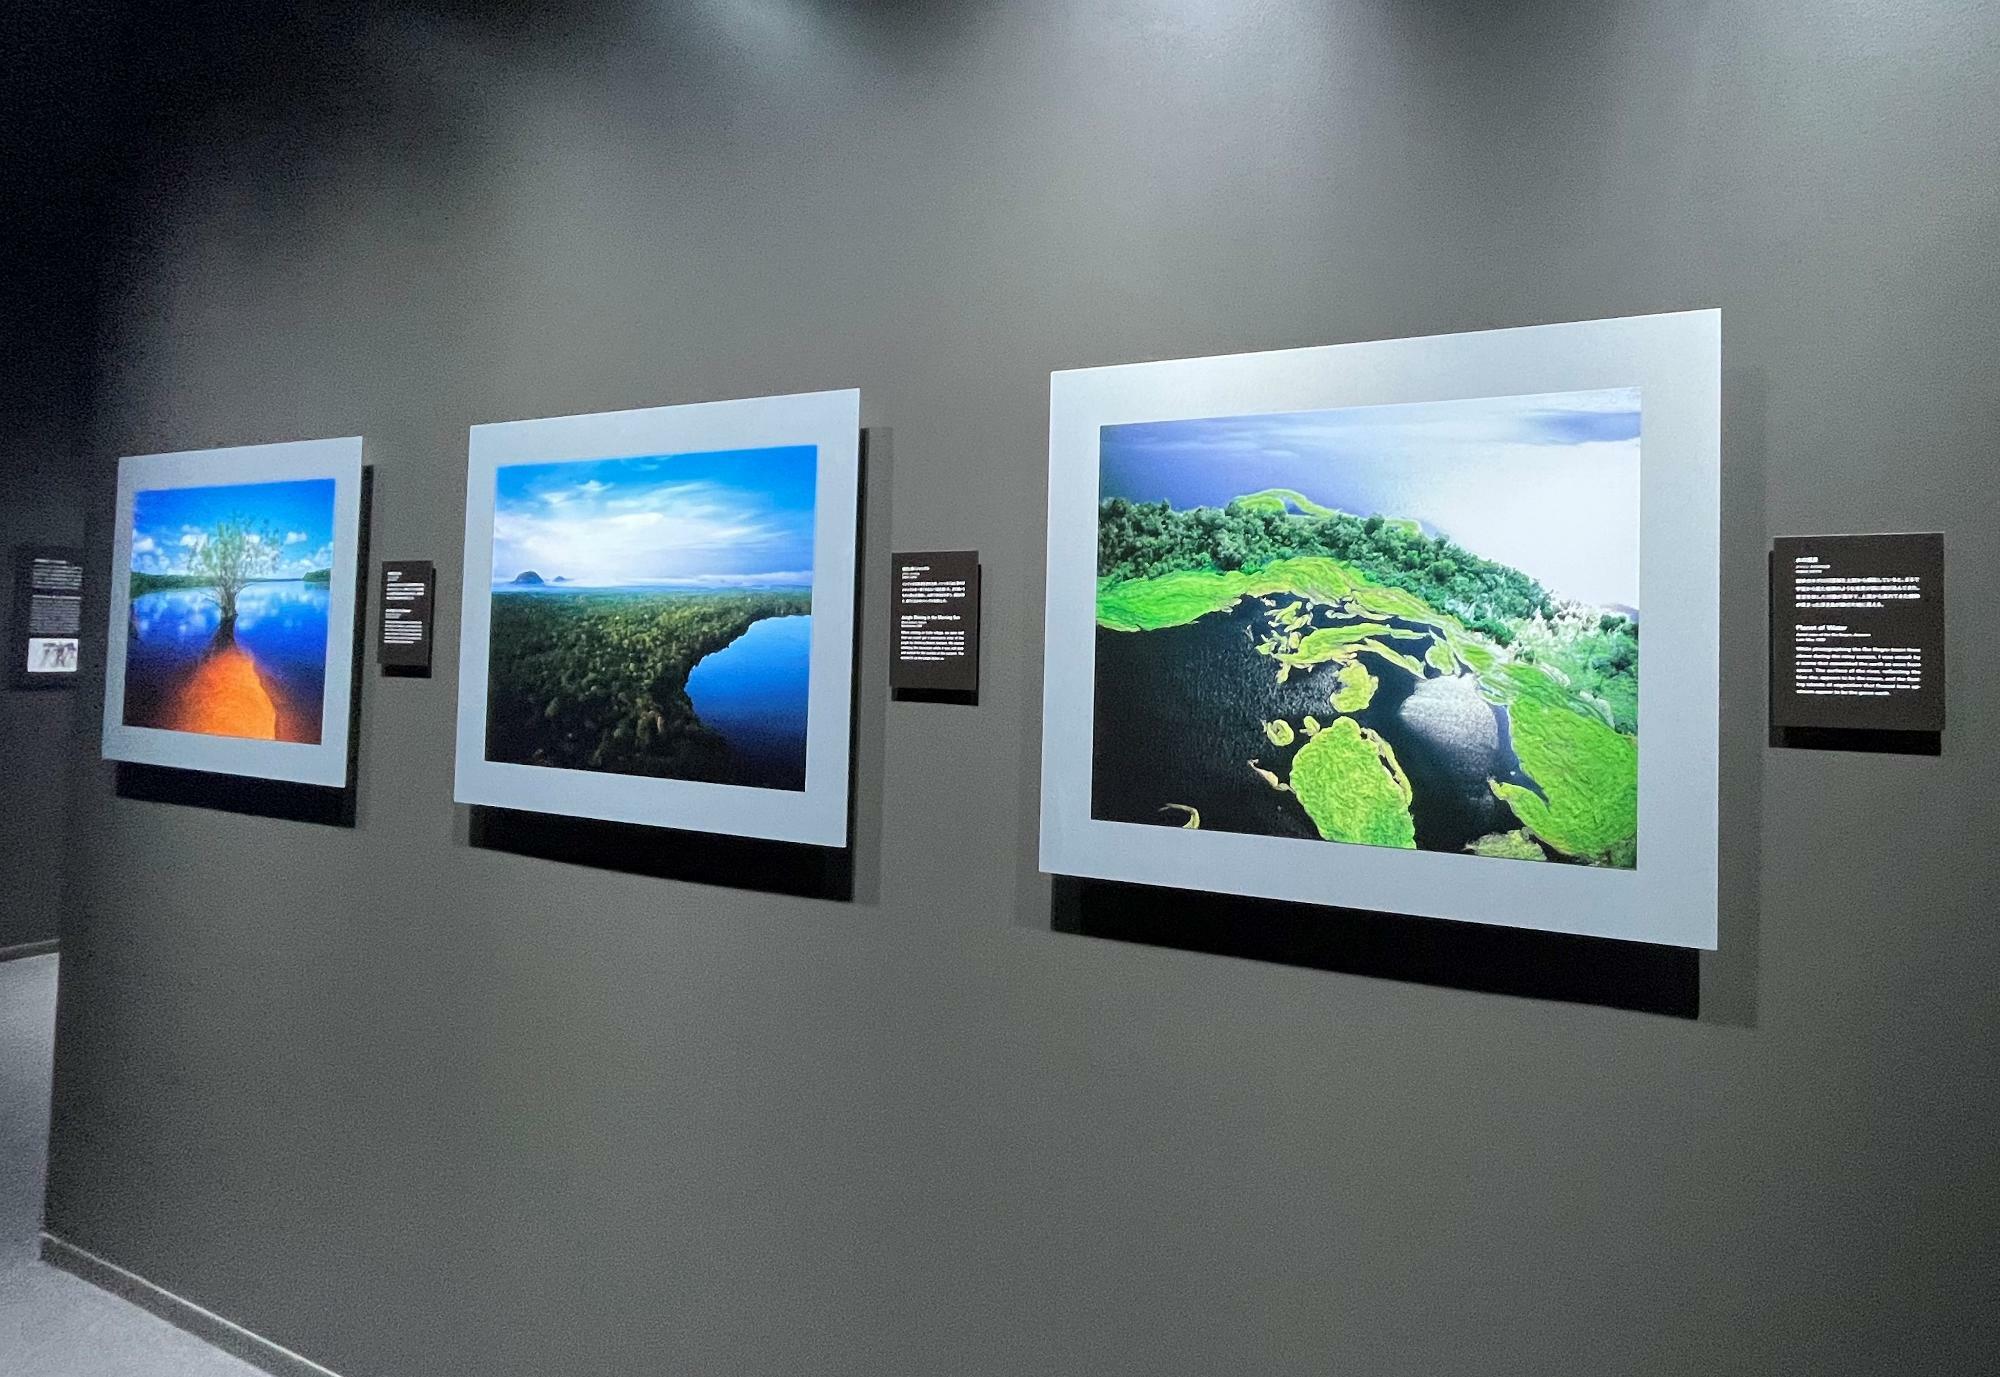 これらは天野氏が撮影した「水の惑星」「「朝日に輝くジャングル」「赤道直下に生きる」と題された写真たち